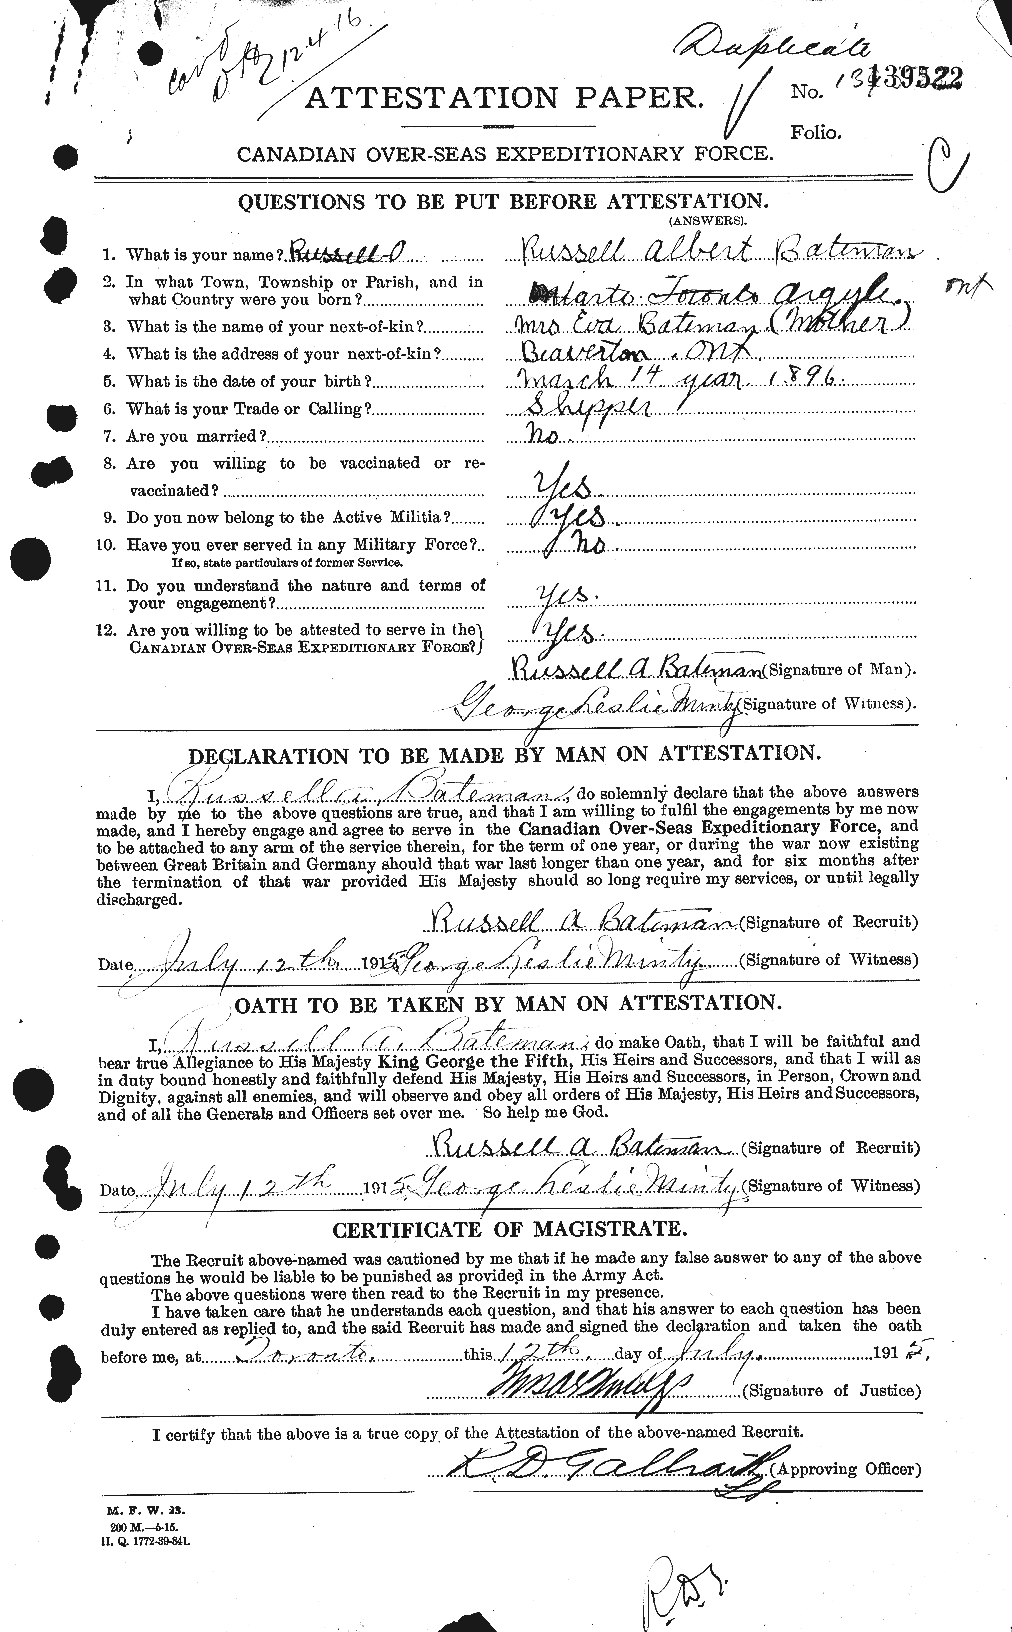 Dossiers du Personnel de la Première Guerre mondiale - CEC 227976a